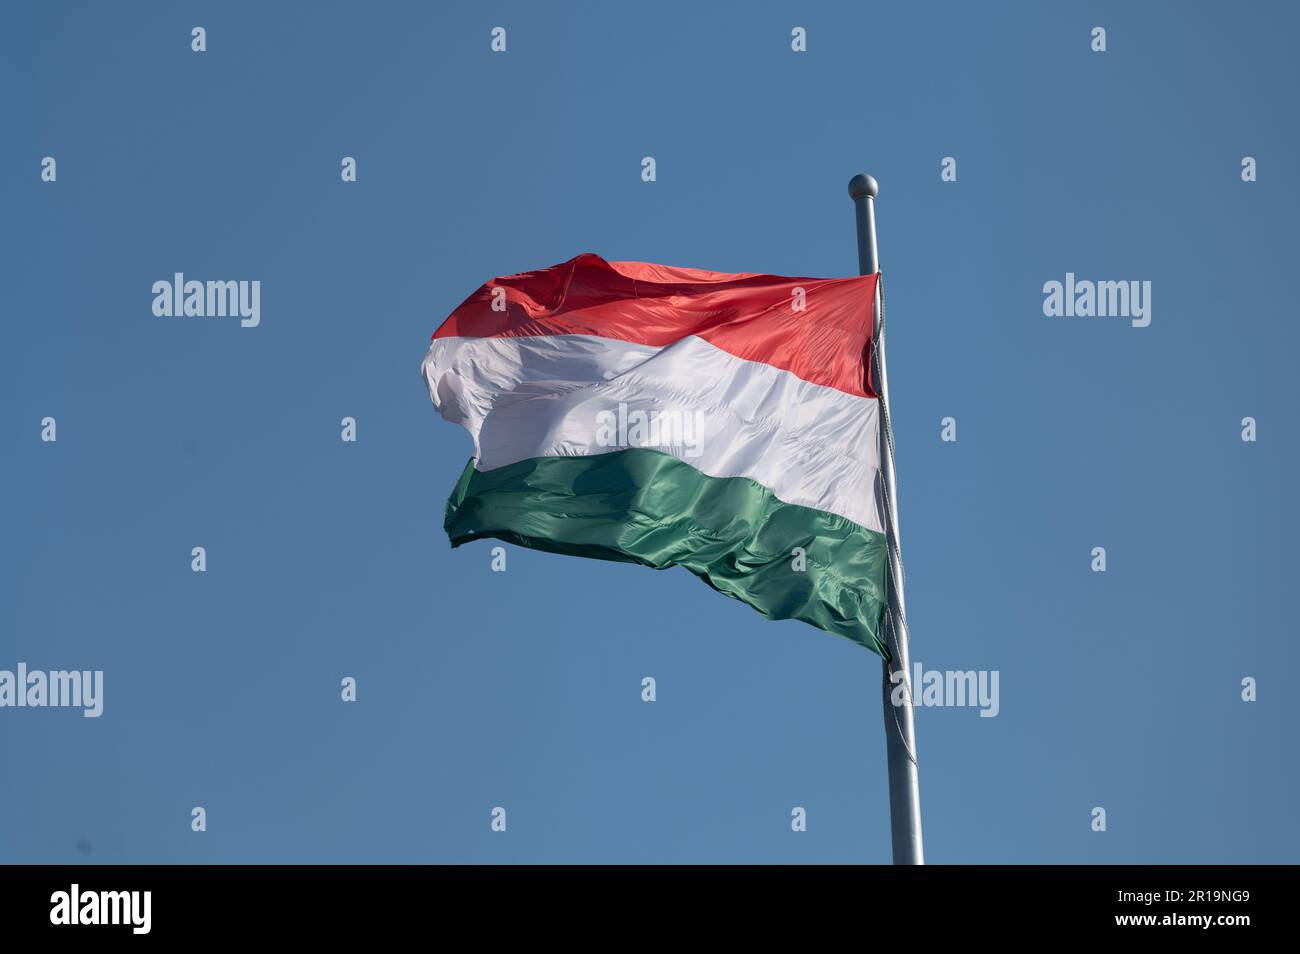 Bandiera nazionale dell'Ungheria che sventola da un'asta di bandiera contro un cielo blu Foto Stock